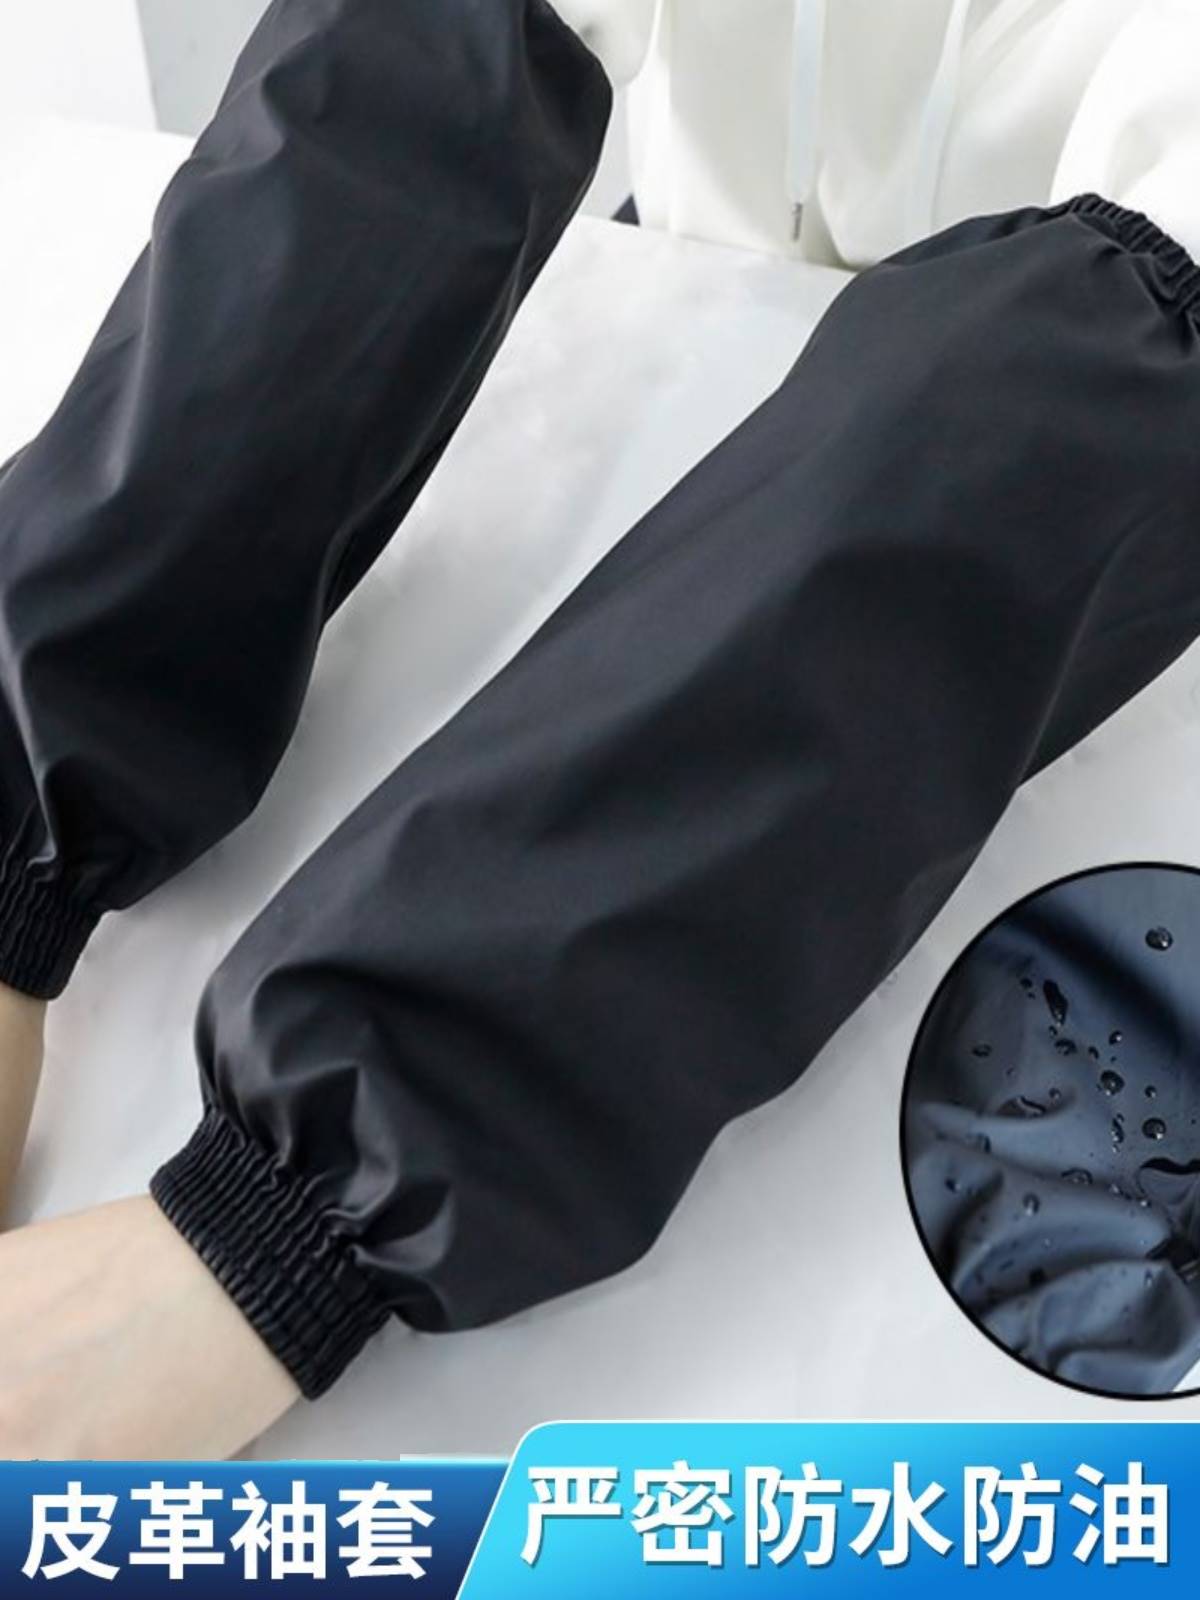 防水袖套PU男女精品皮革袖套加厚防水防油耐磨套袖防污水产护袖